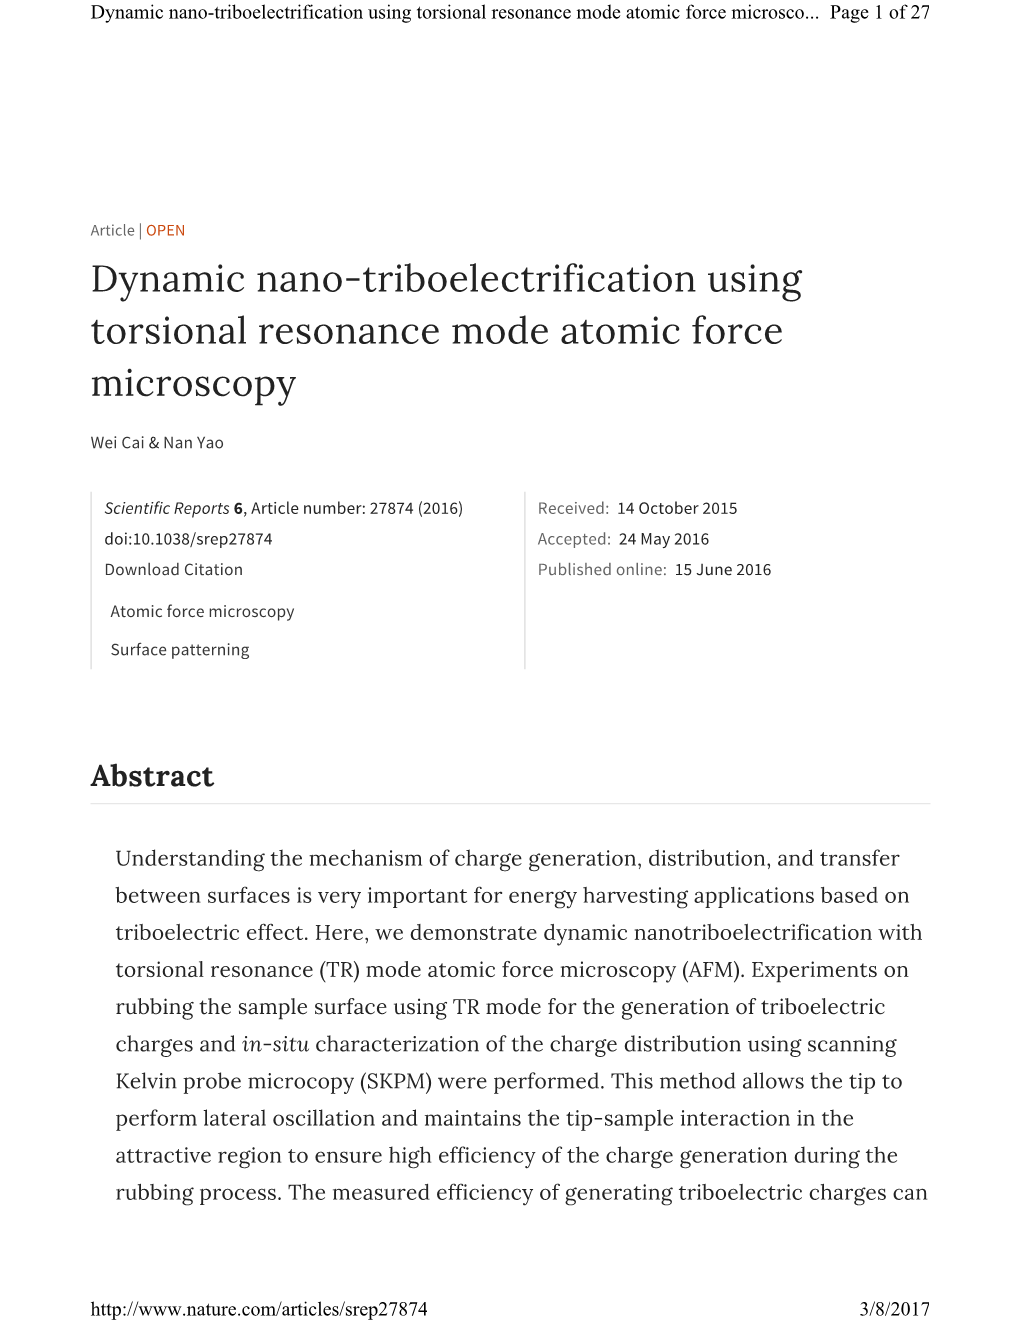 Dynamic Nano-Triboelectrification Using Torsional Resonance Mode Atomic Force Microsco